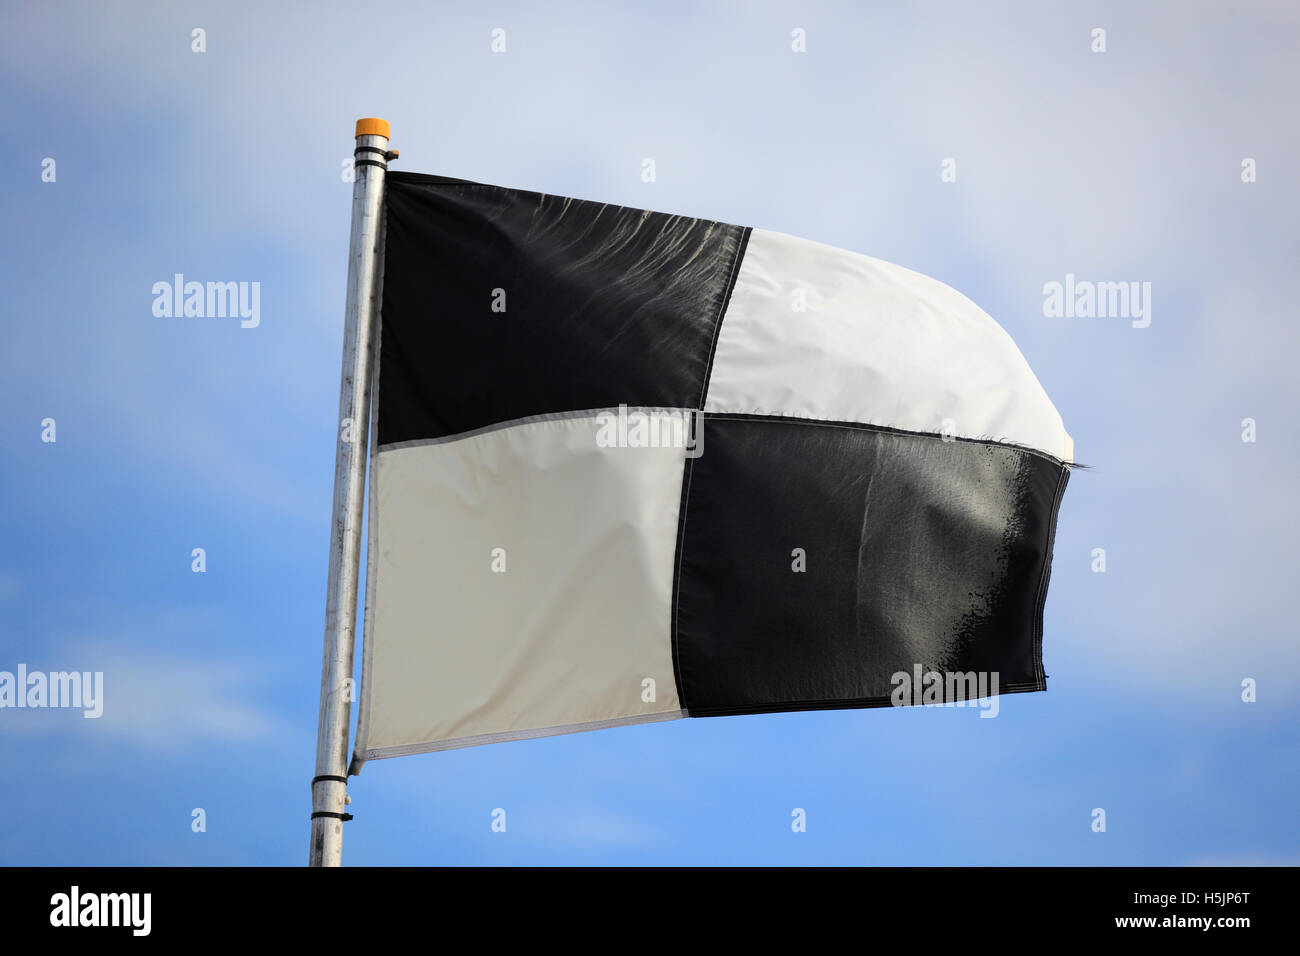 Bandera a cuadros blancos y negros en la playa. Foto de stock